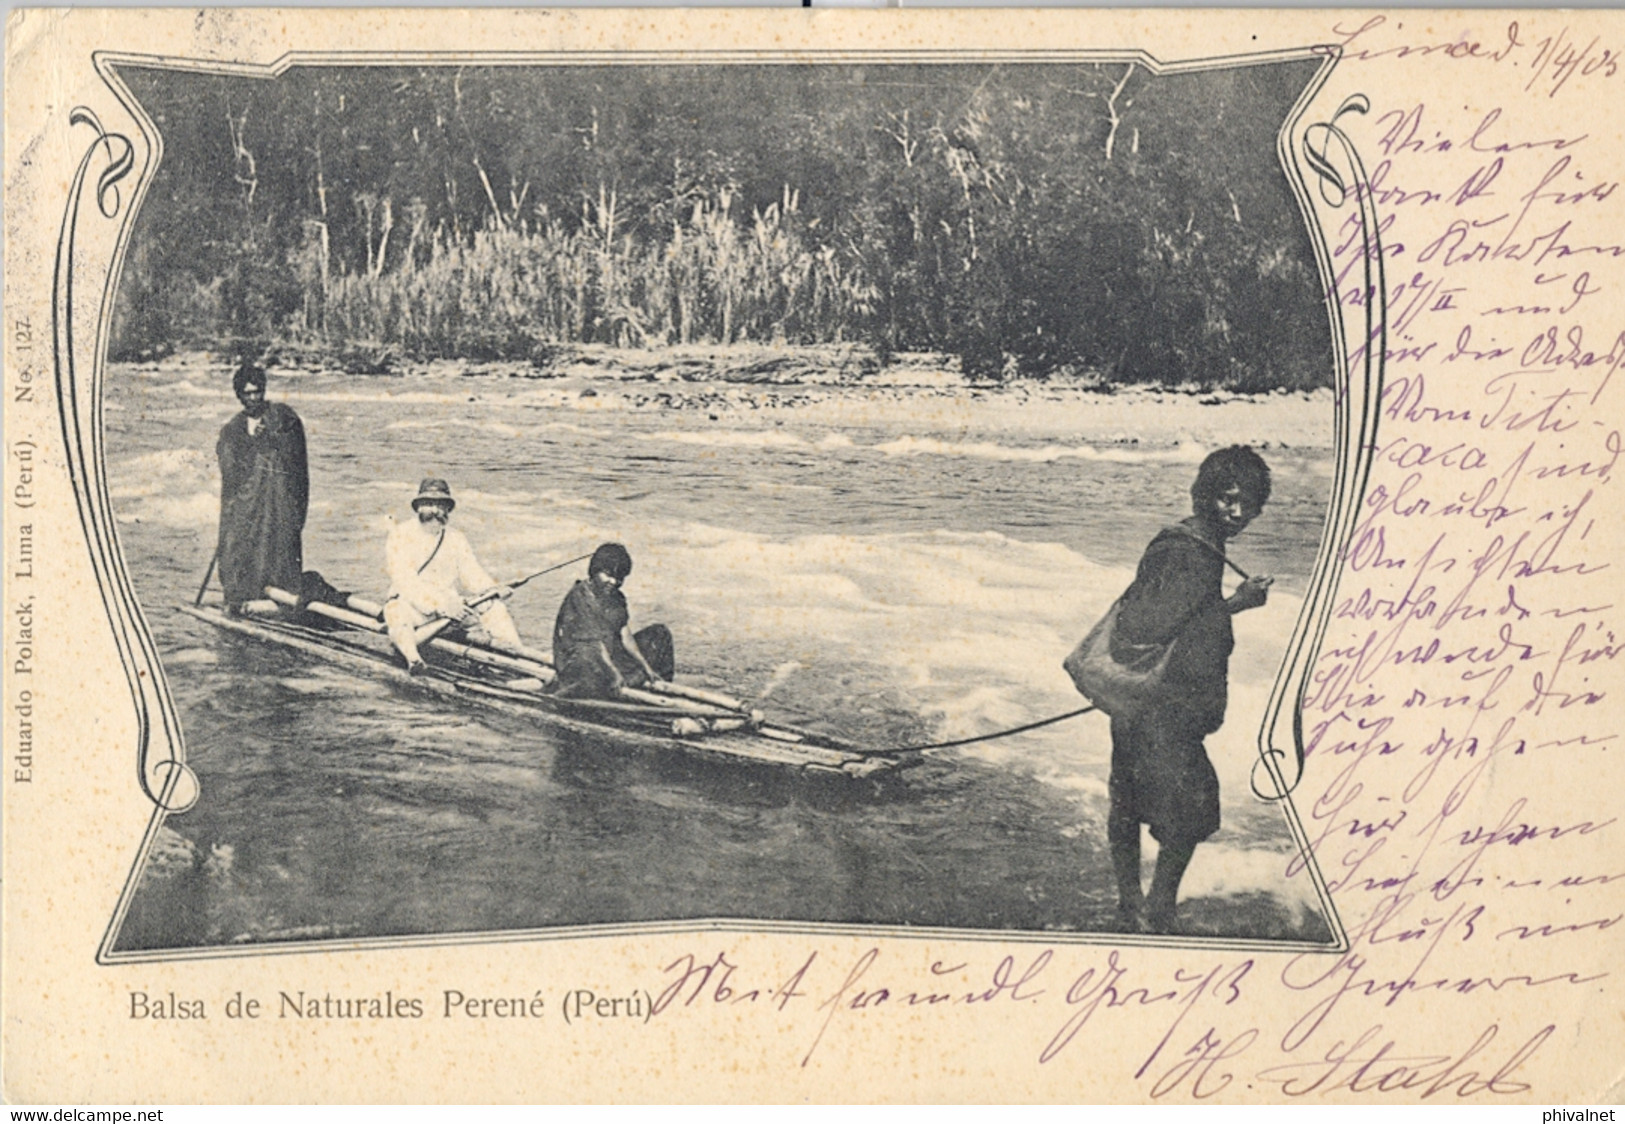 1905 PERÚ , T.P. CIRCULADA , LIMA - BERLIN , LLEGADA , BALSA DE NATURALES PERENÉ - Perù